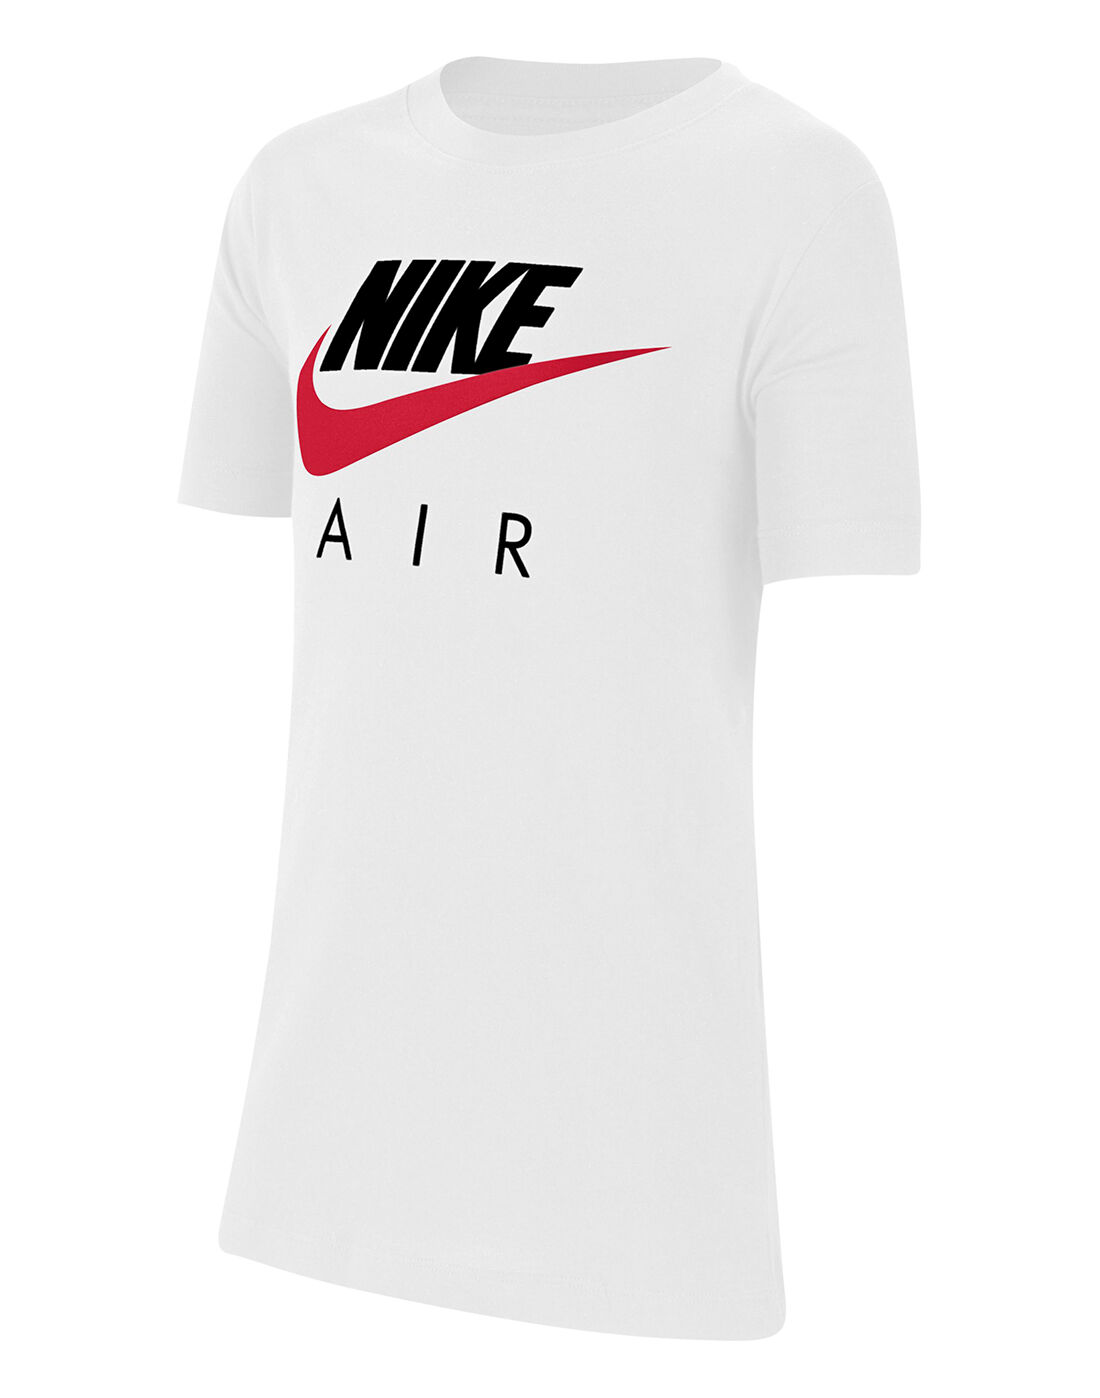 nike air t shirt white